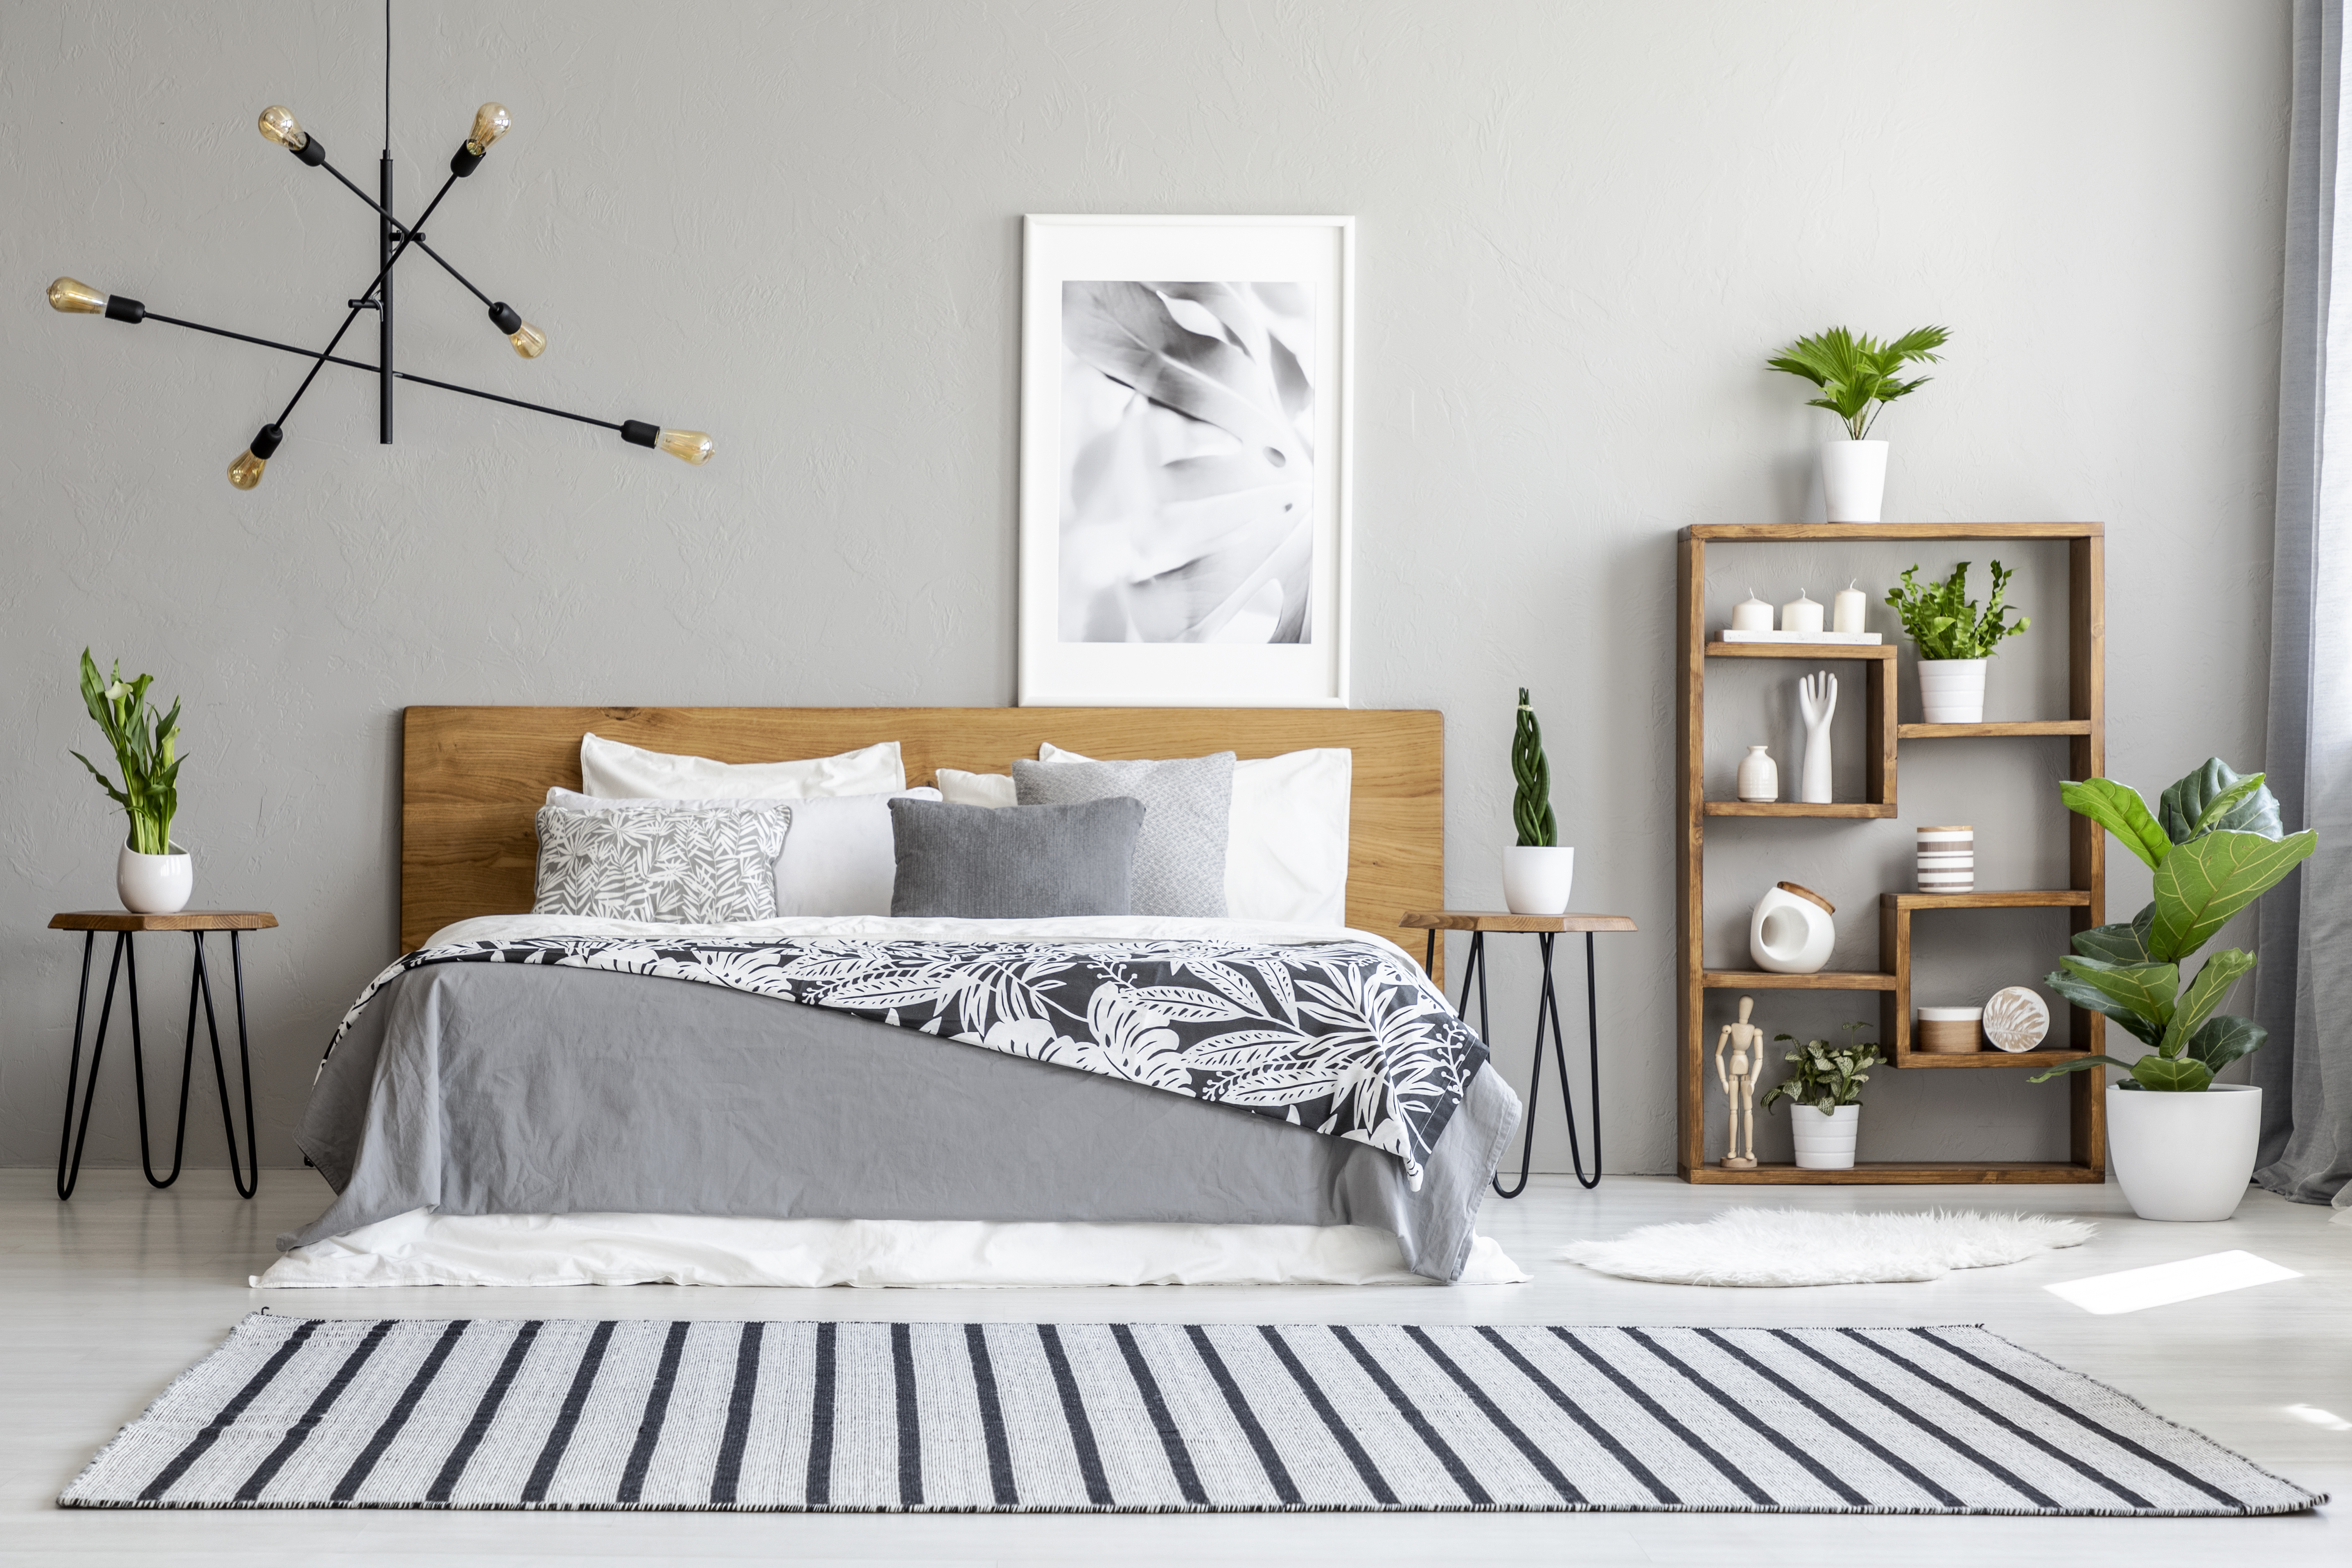 interior design bedroom stripe rug contemporary shelves